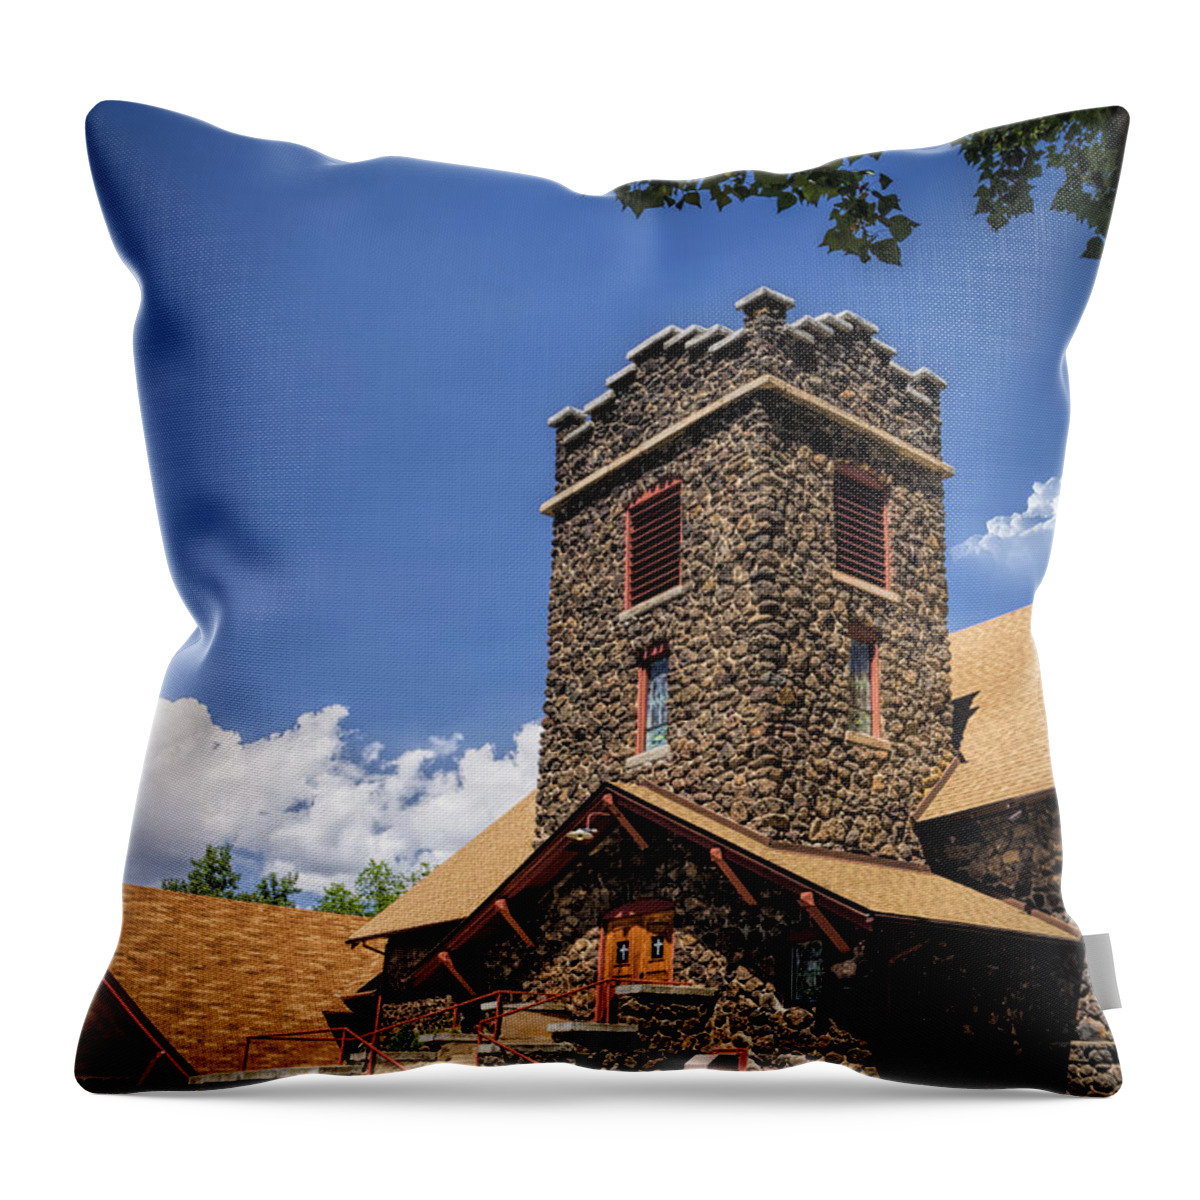 Colorado Throw Pillow featuring the photograph Eckert Colorado Presbyterian Church by Janice Pariza